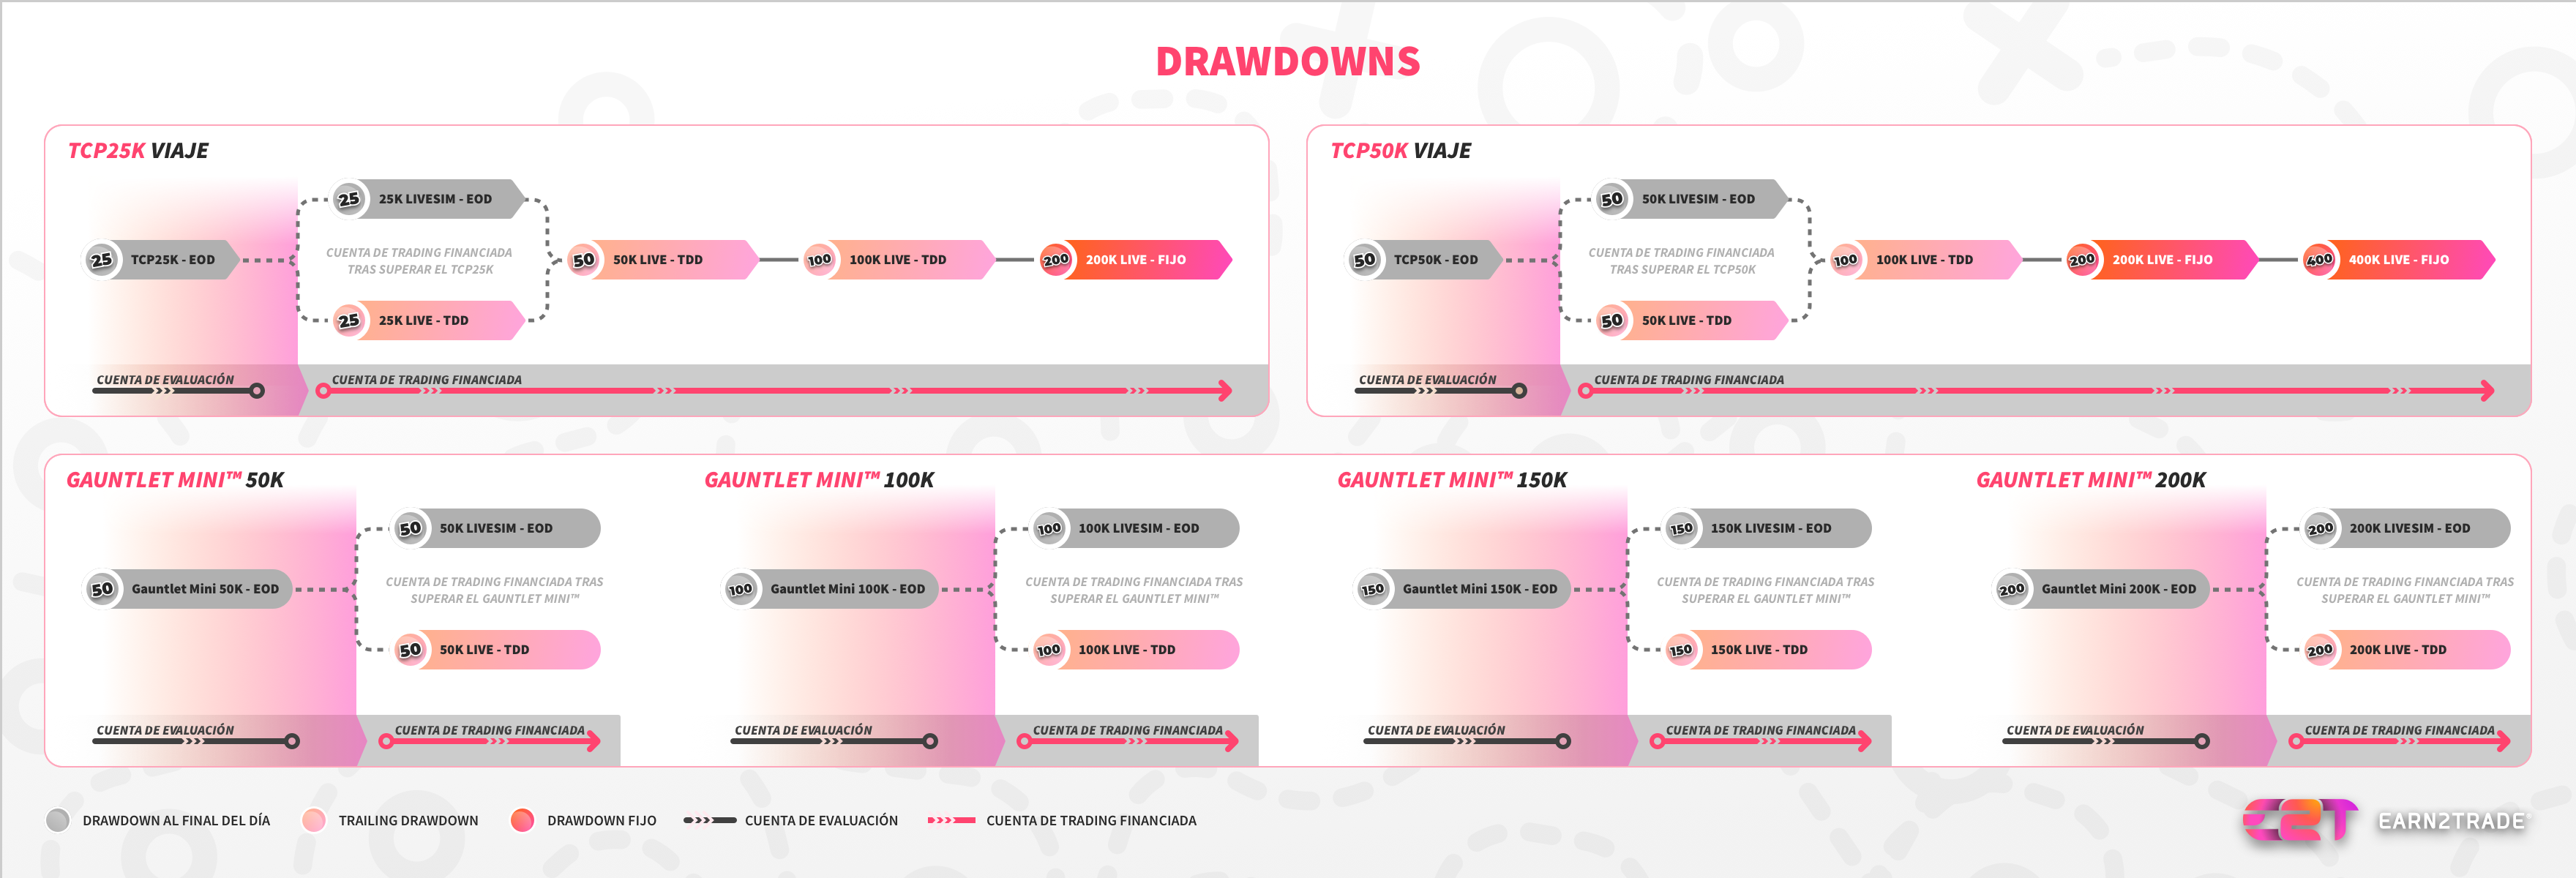 ¿Cuáles son los distintos tipos de drawdown?